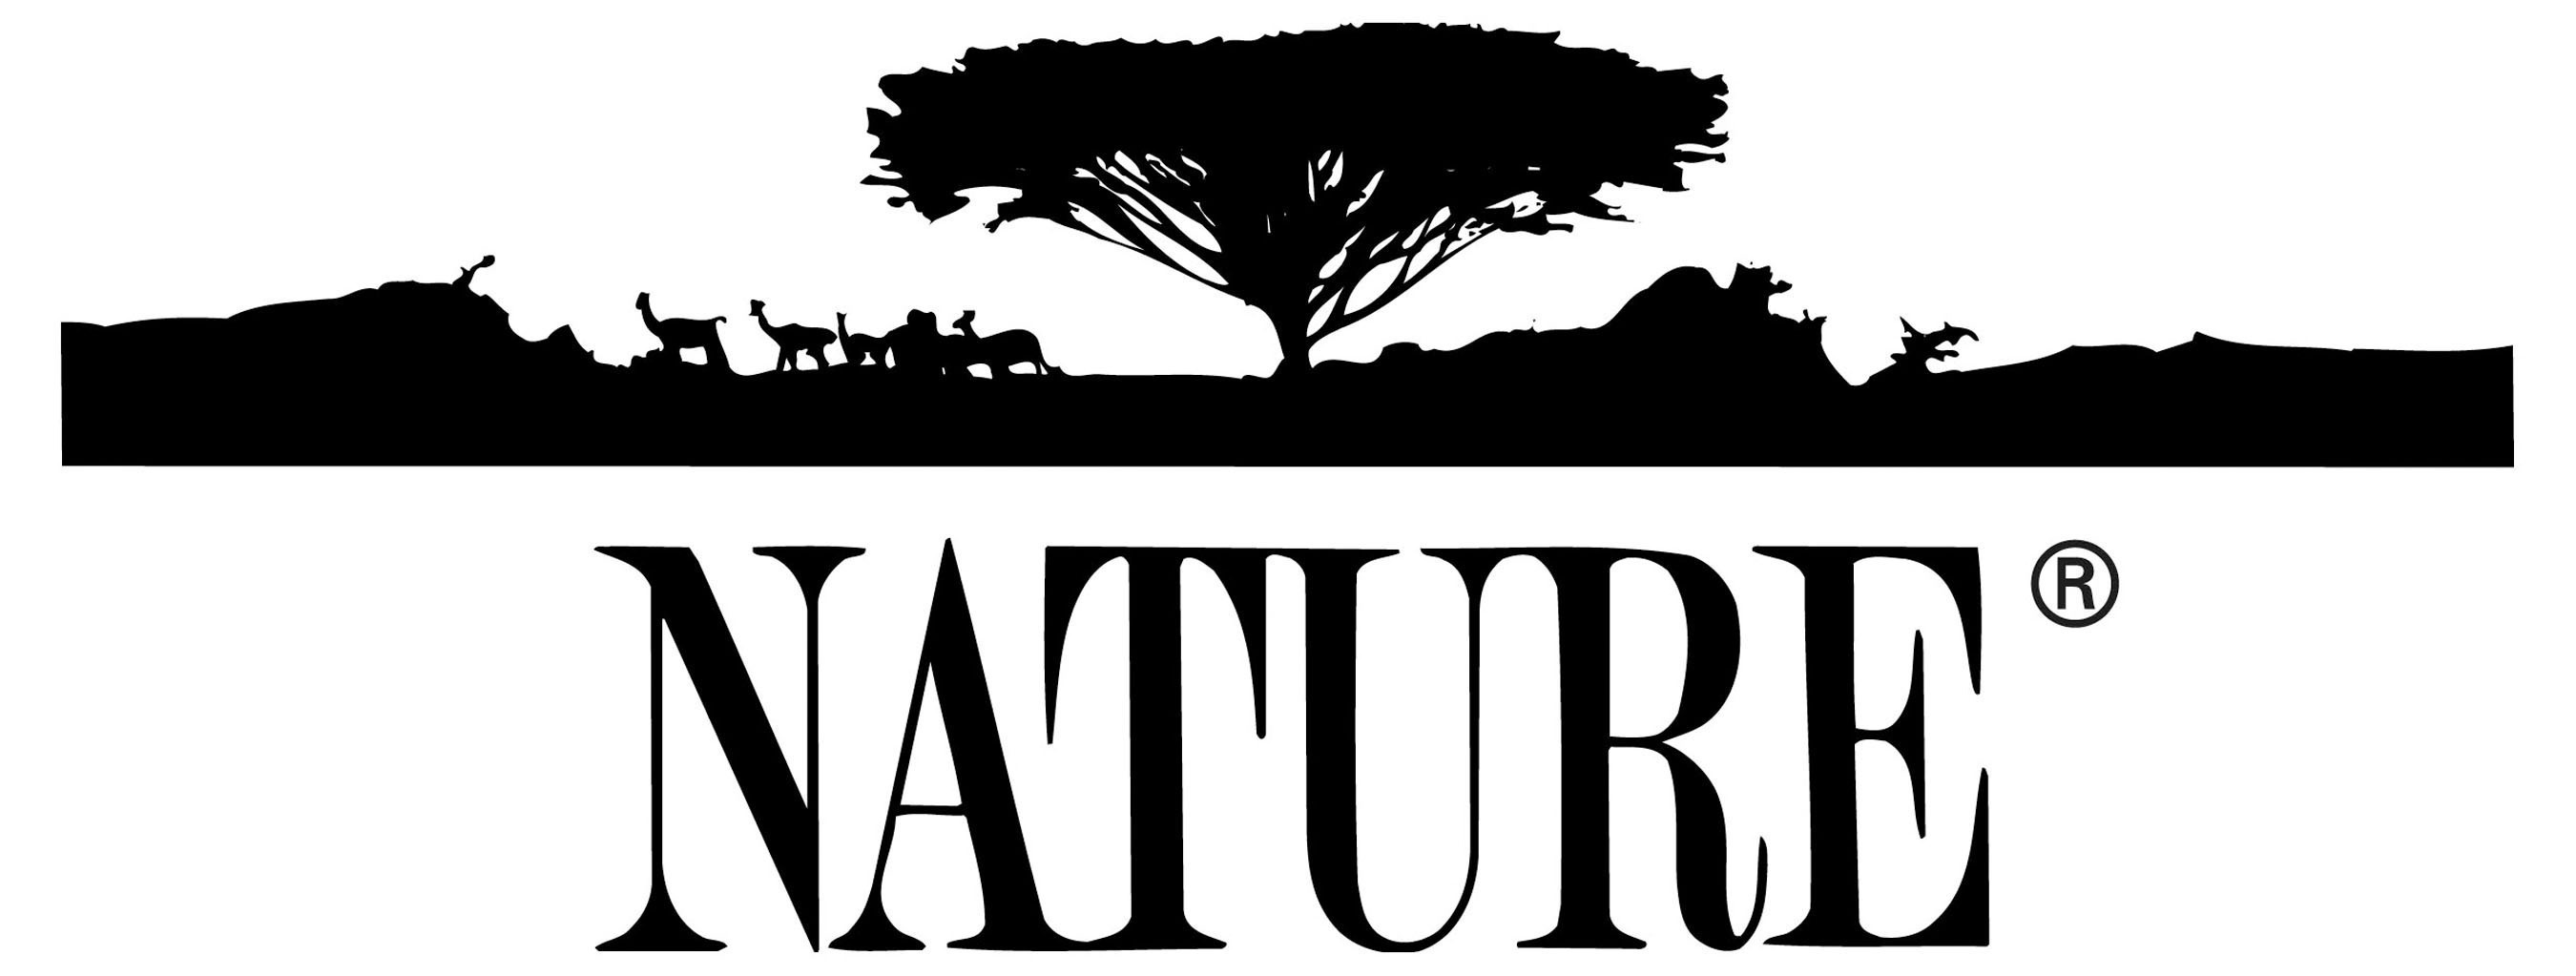 NATURE PBS TV Series registered logo. (PRNewsFoto/WNET) (PRNewsFoto/WNET)